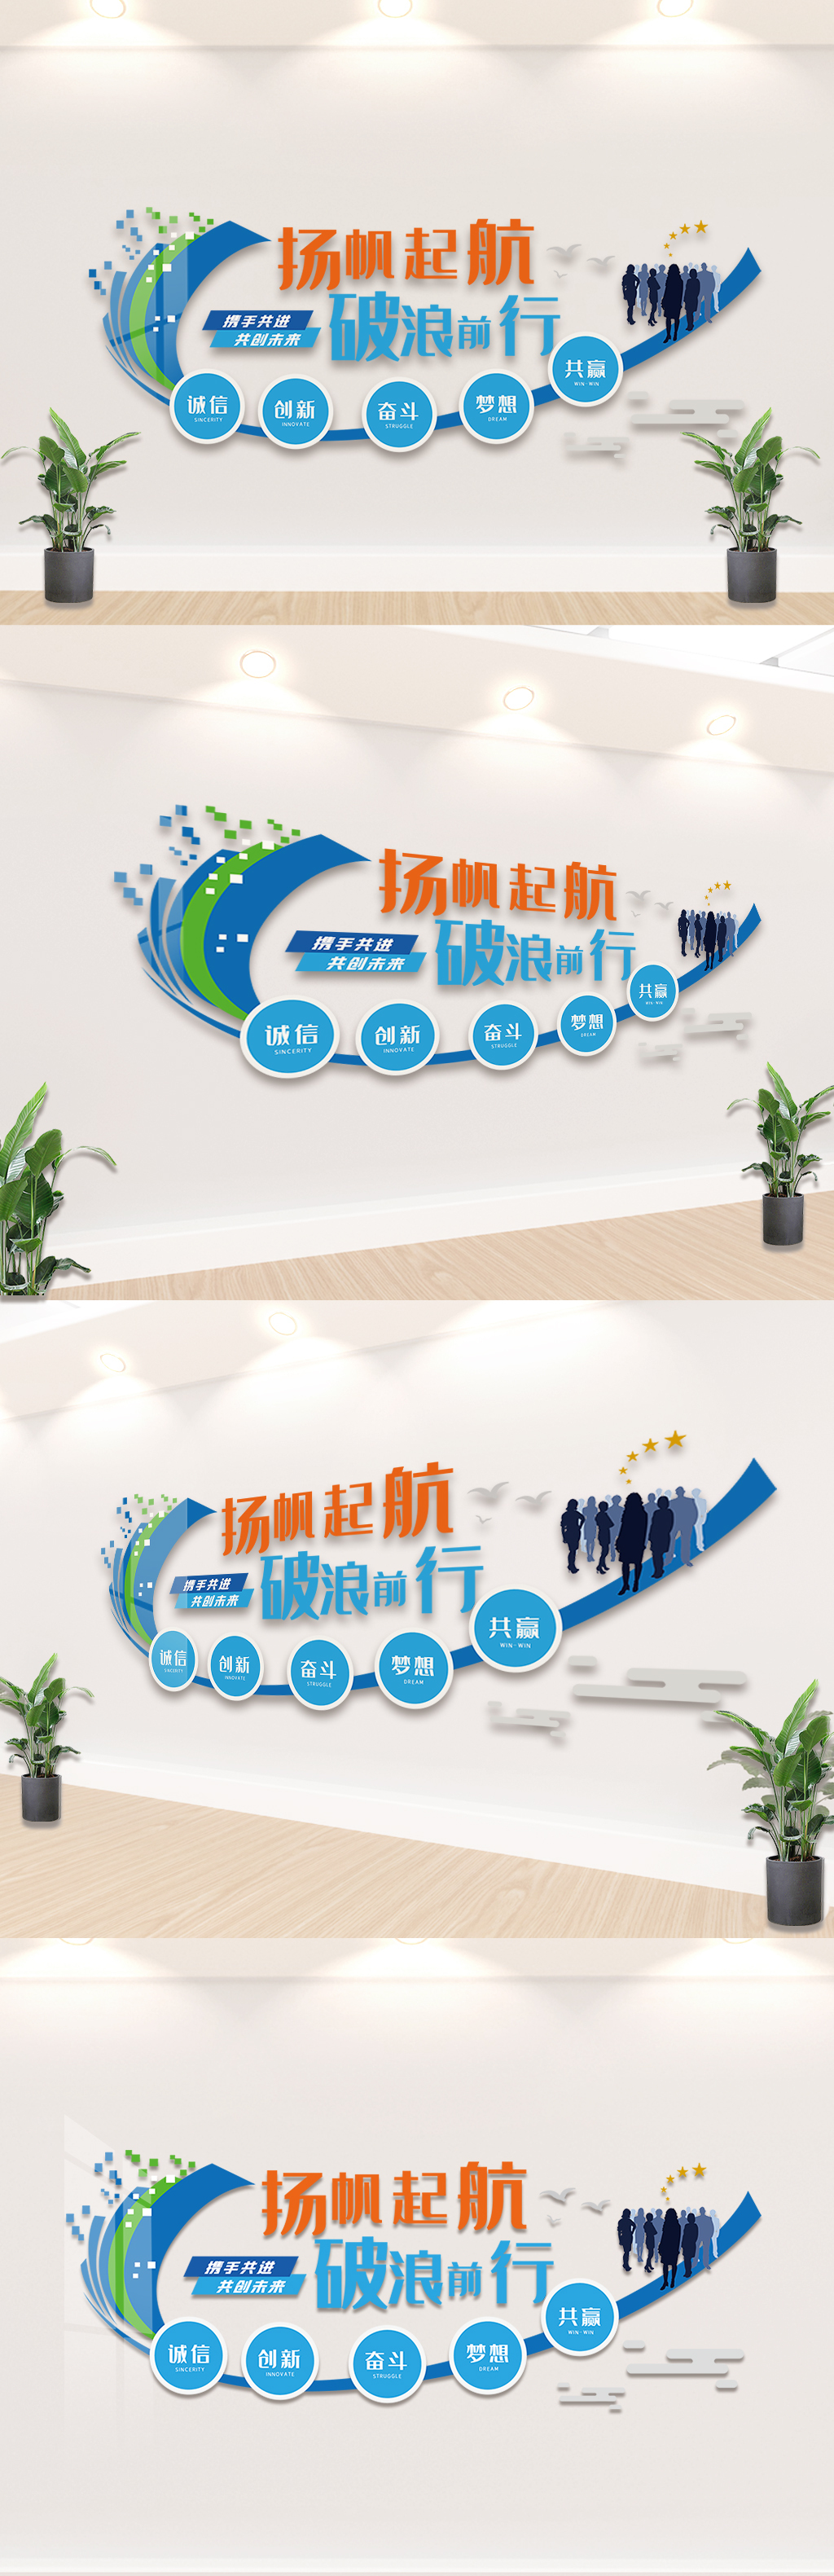 蓝色励志企业宣传文化墙设计模板图片